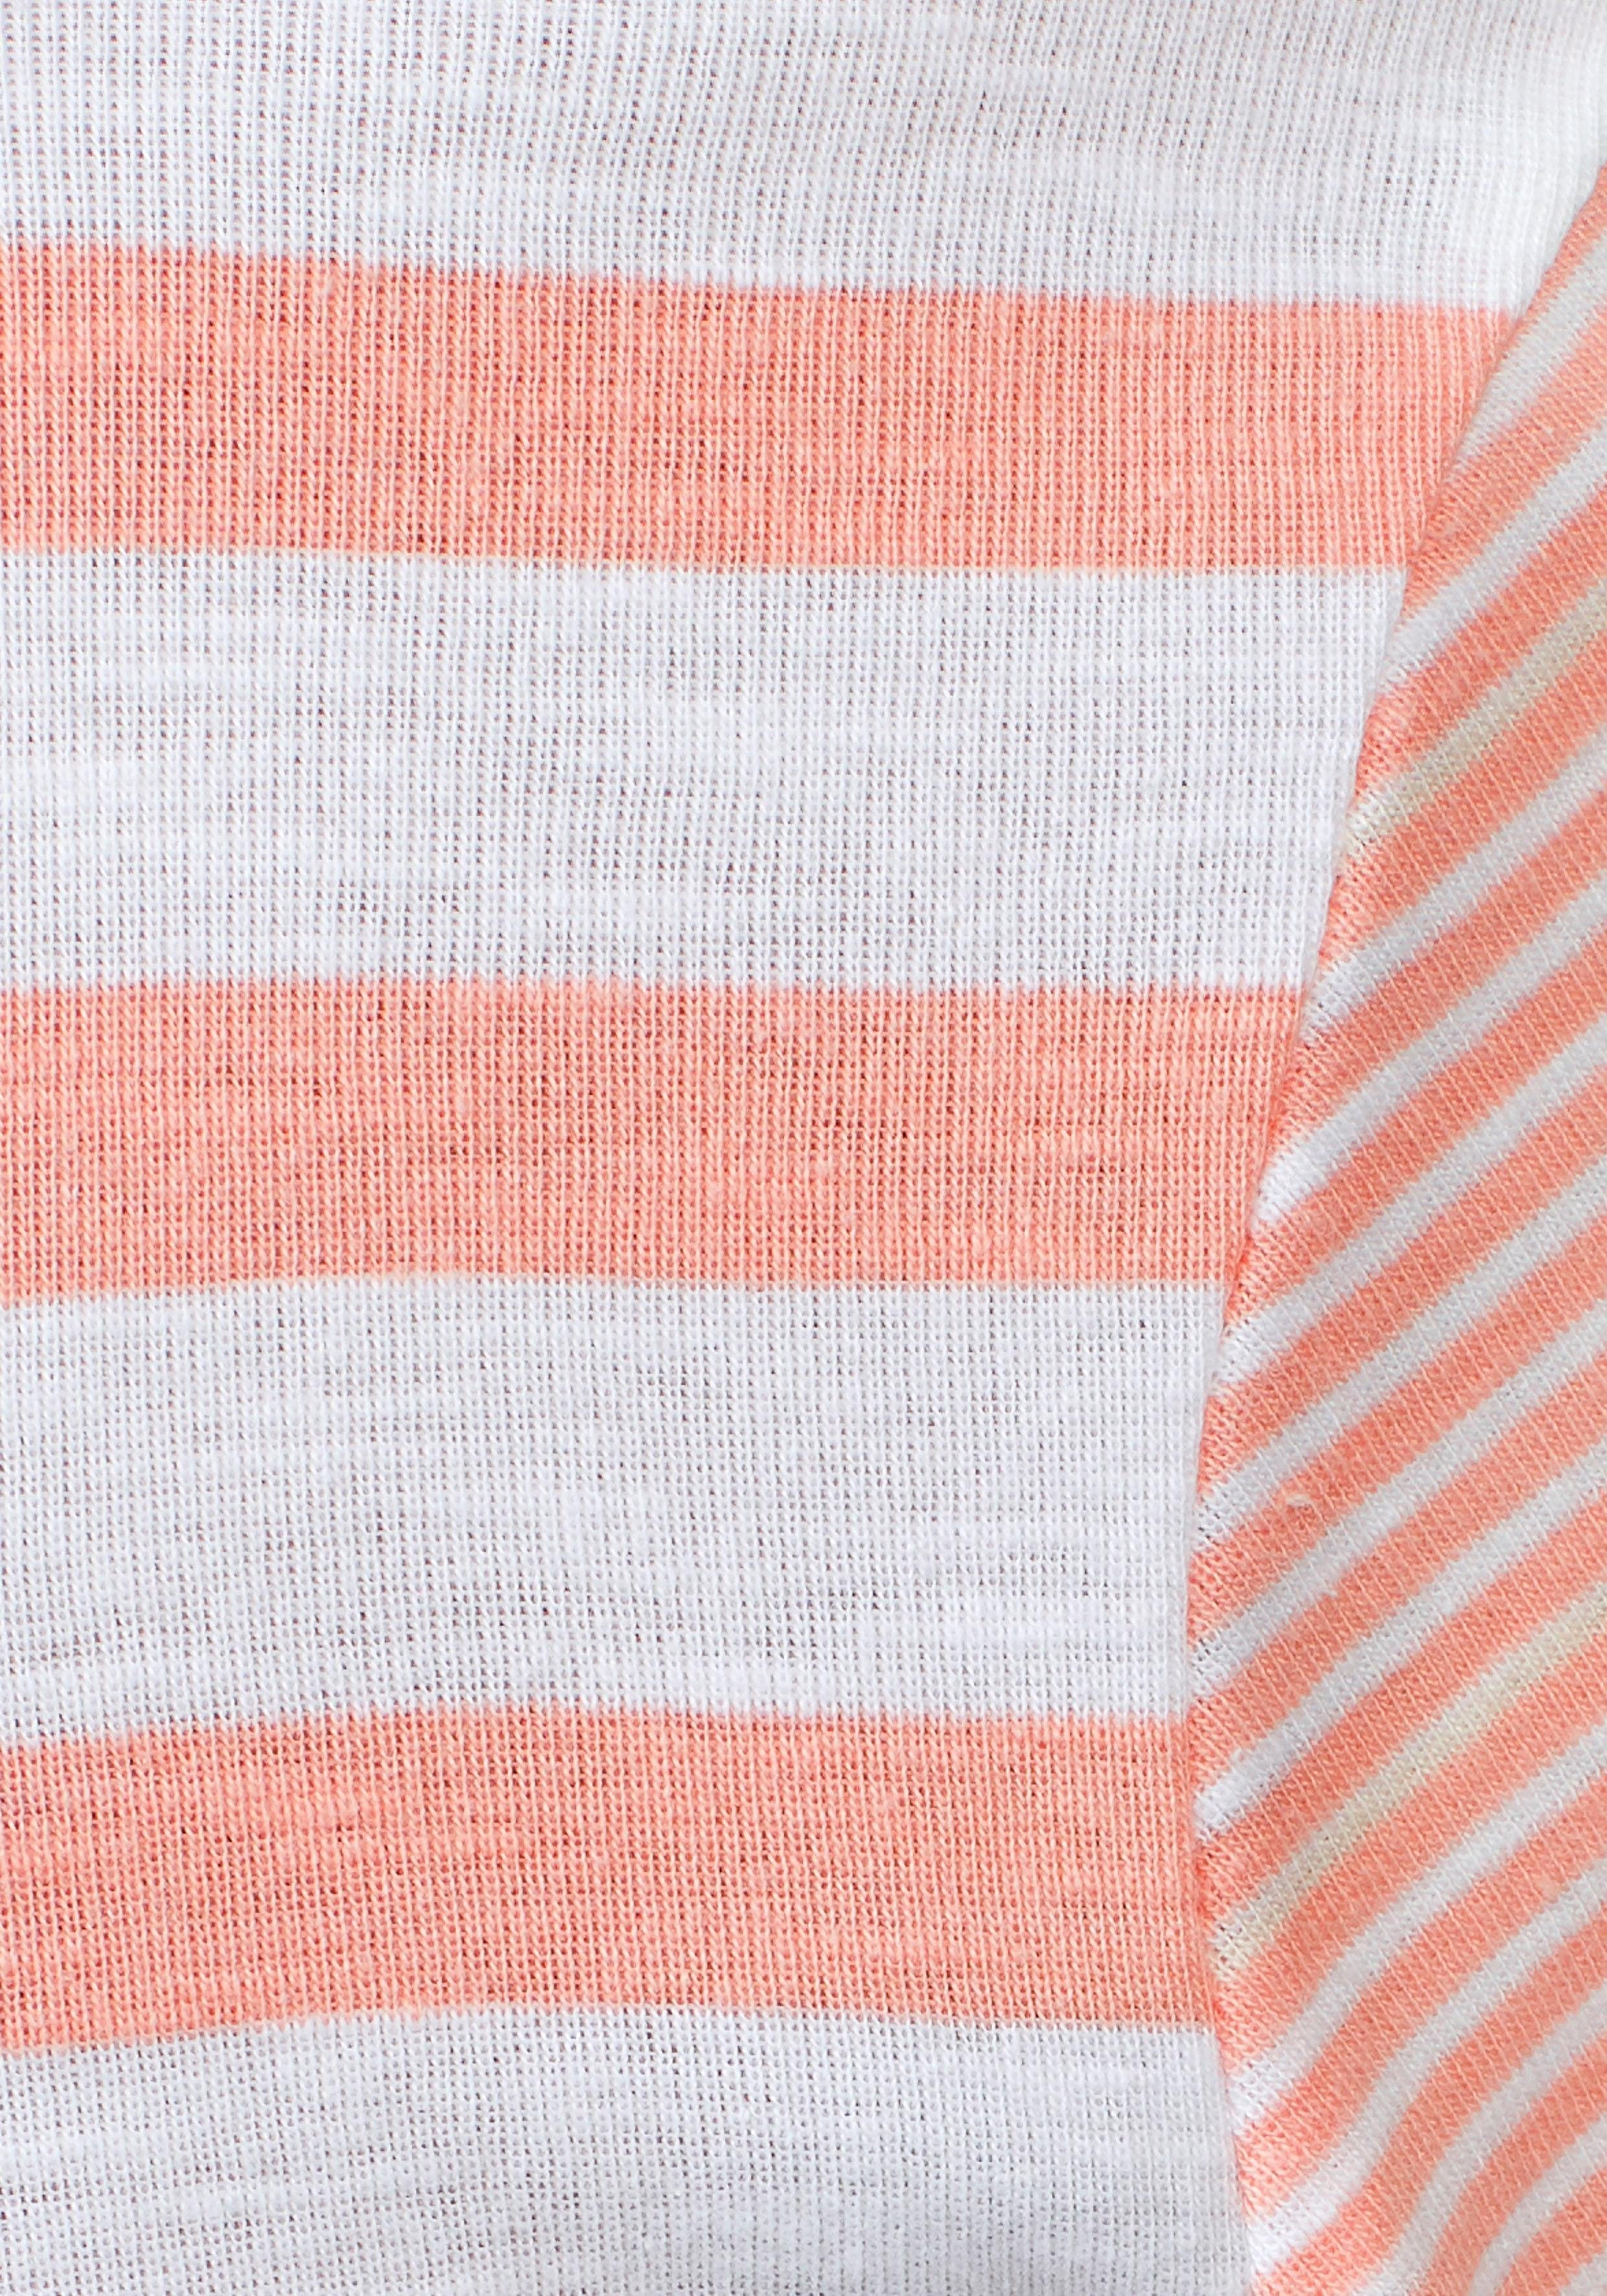 Kordel schönen KangaROOS rosa-weiß-gestreift im Kapuzenshirt passender mit Streifen-Mix